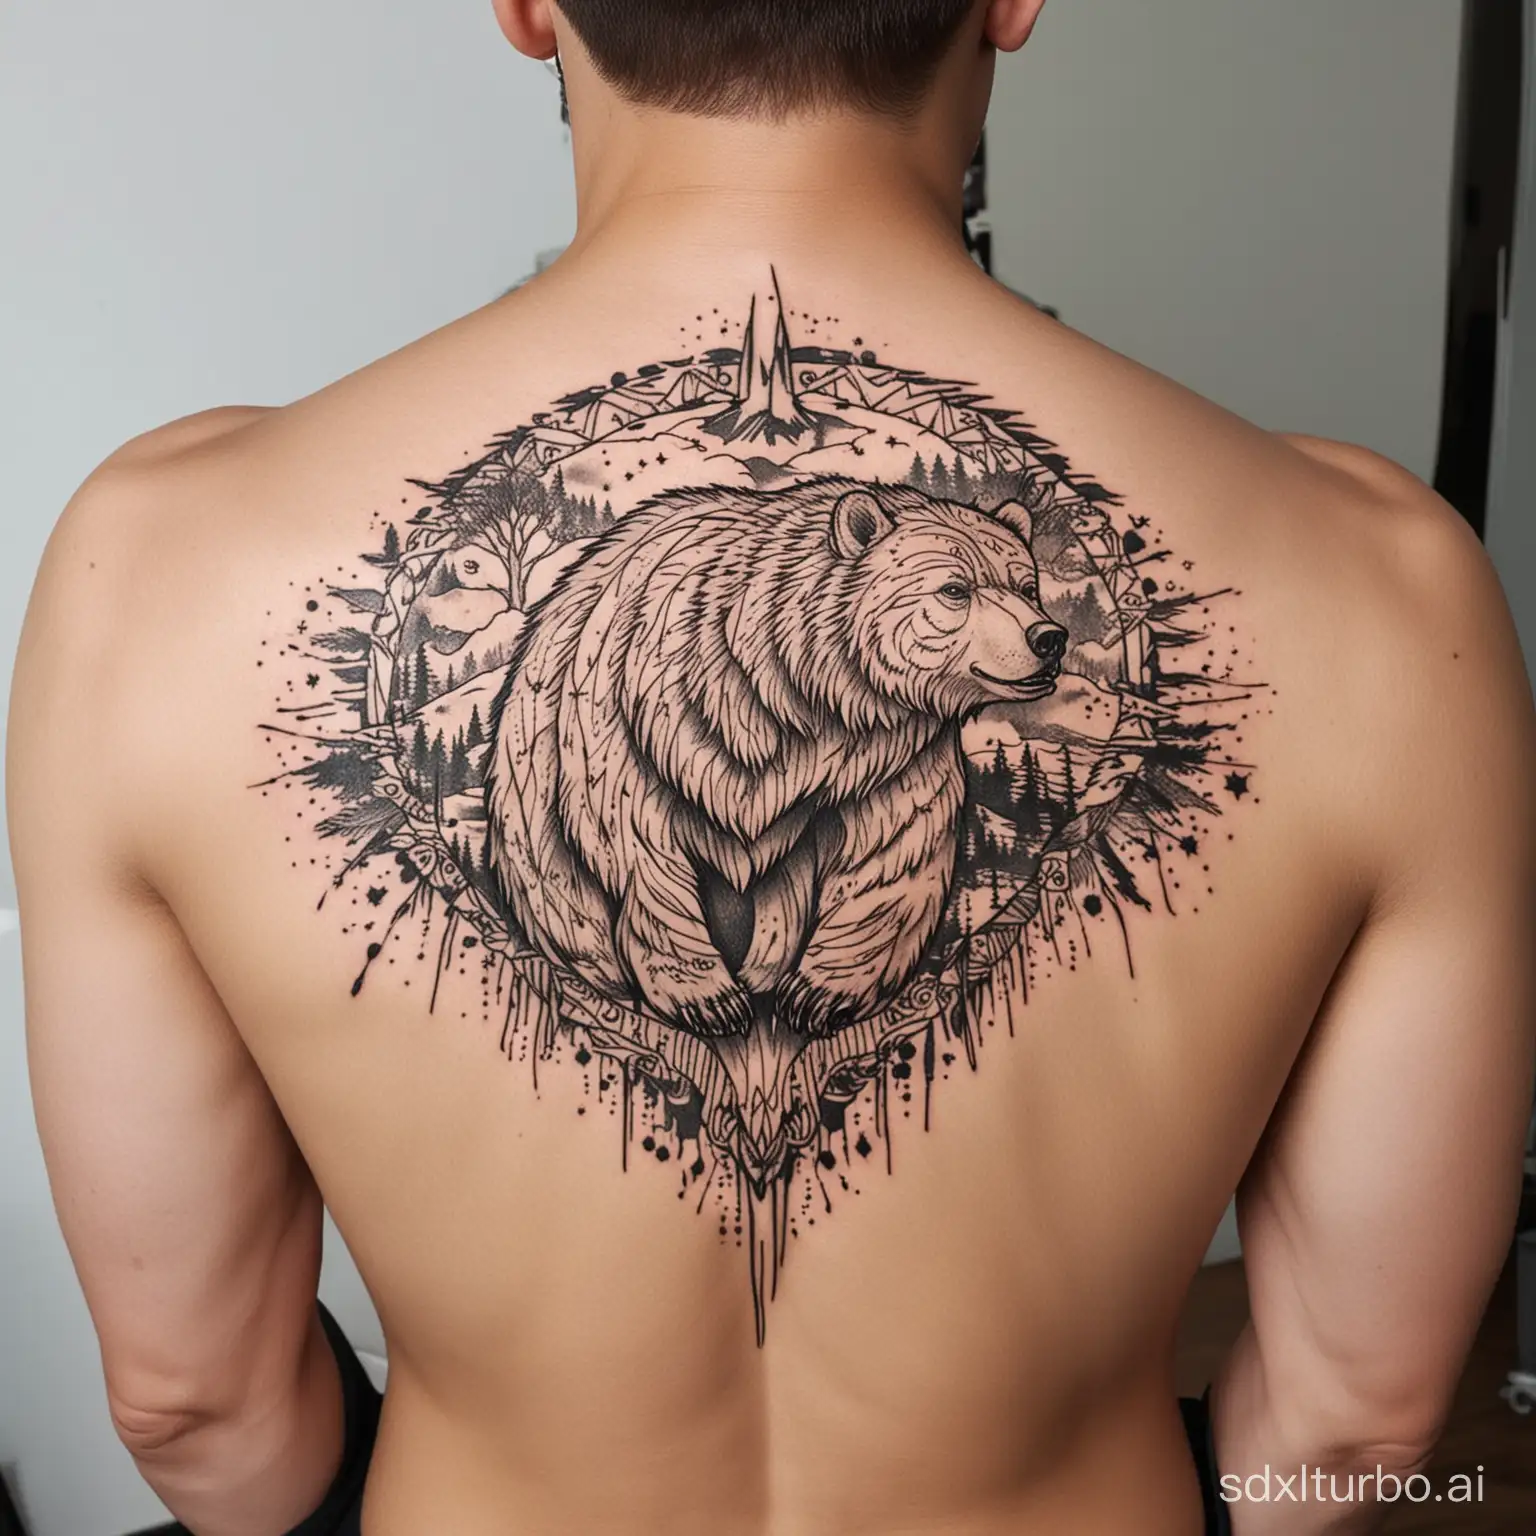 Tatuagem grande nas costas do contorno de um espírito de urso sem muitos detalhes